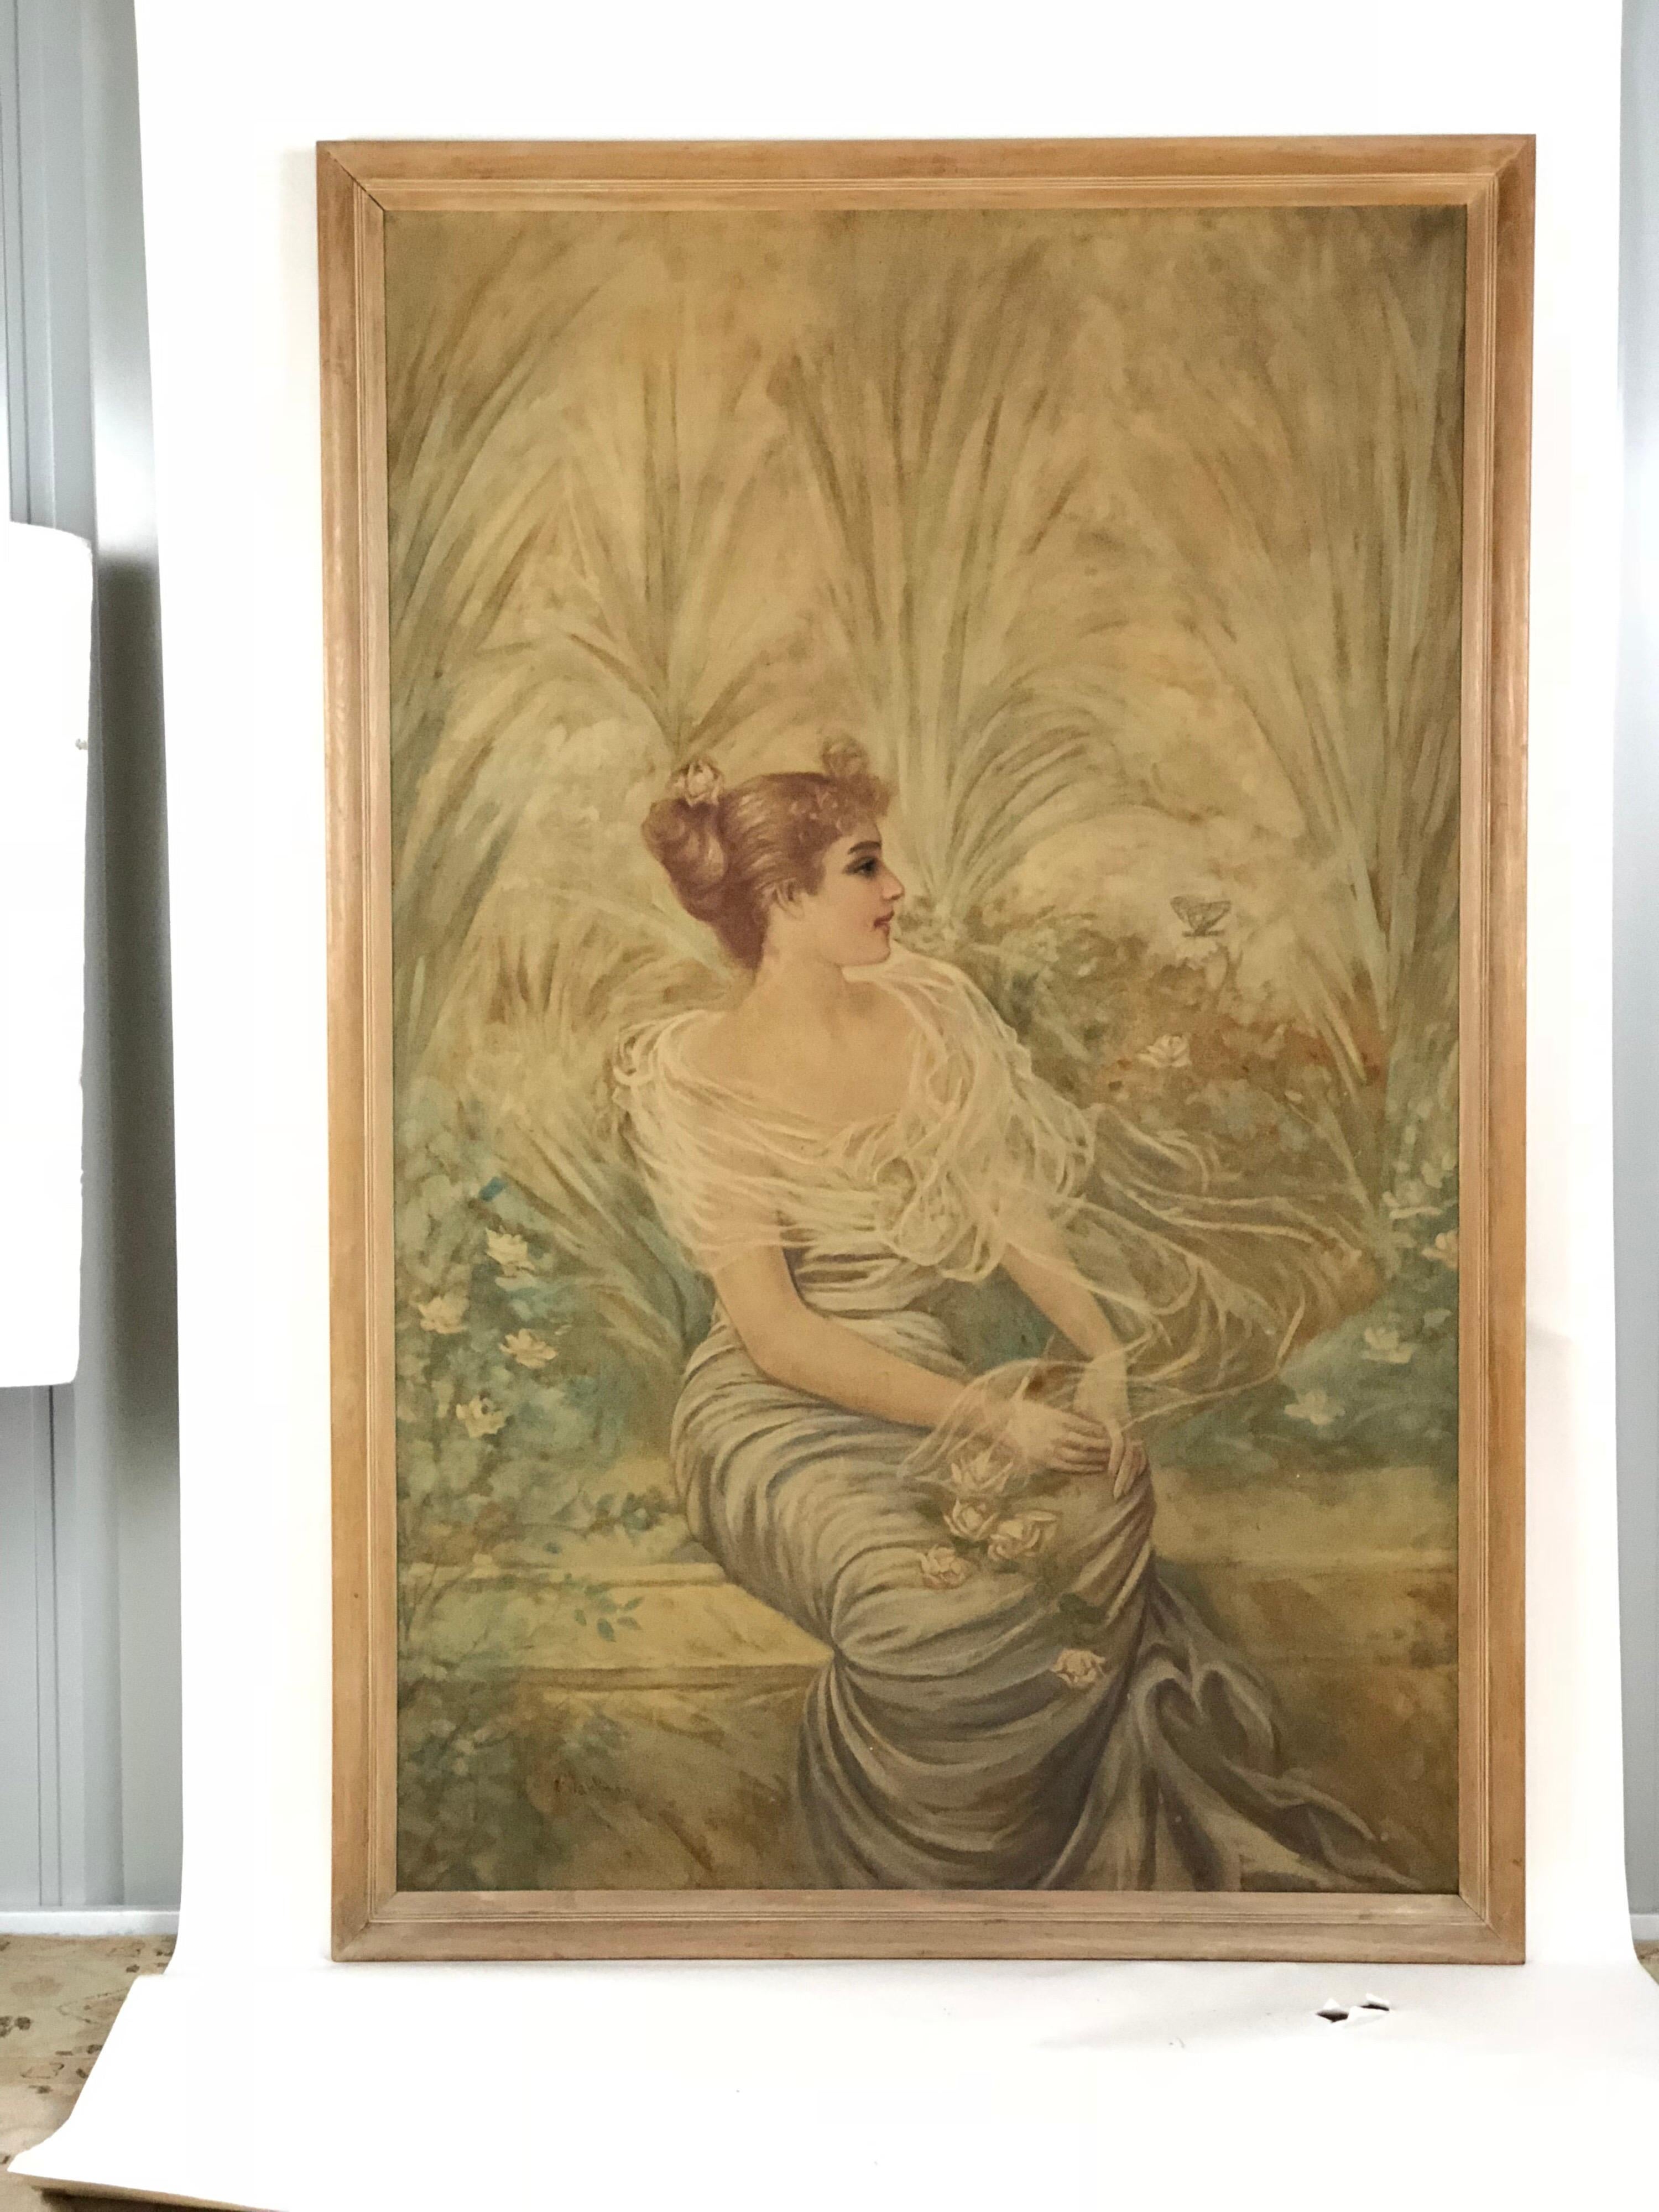 Fin du 19e ou début du 20e siècle, portrait de jardin d'une dame peint dans la période de l'Art nouveau. Des palmiers stylisés servent de toile de fond élégante à une héritière assise, peinte dans des tons pastels doux et entourée de flore. Le